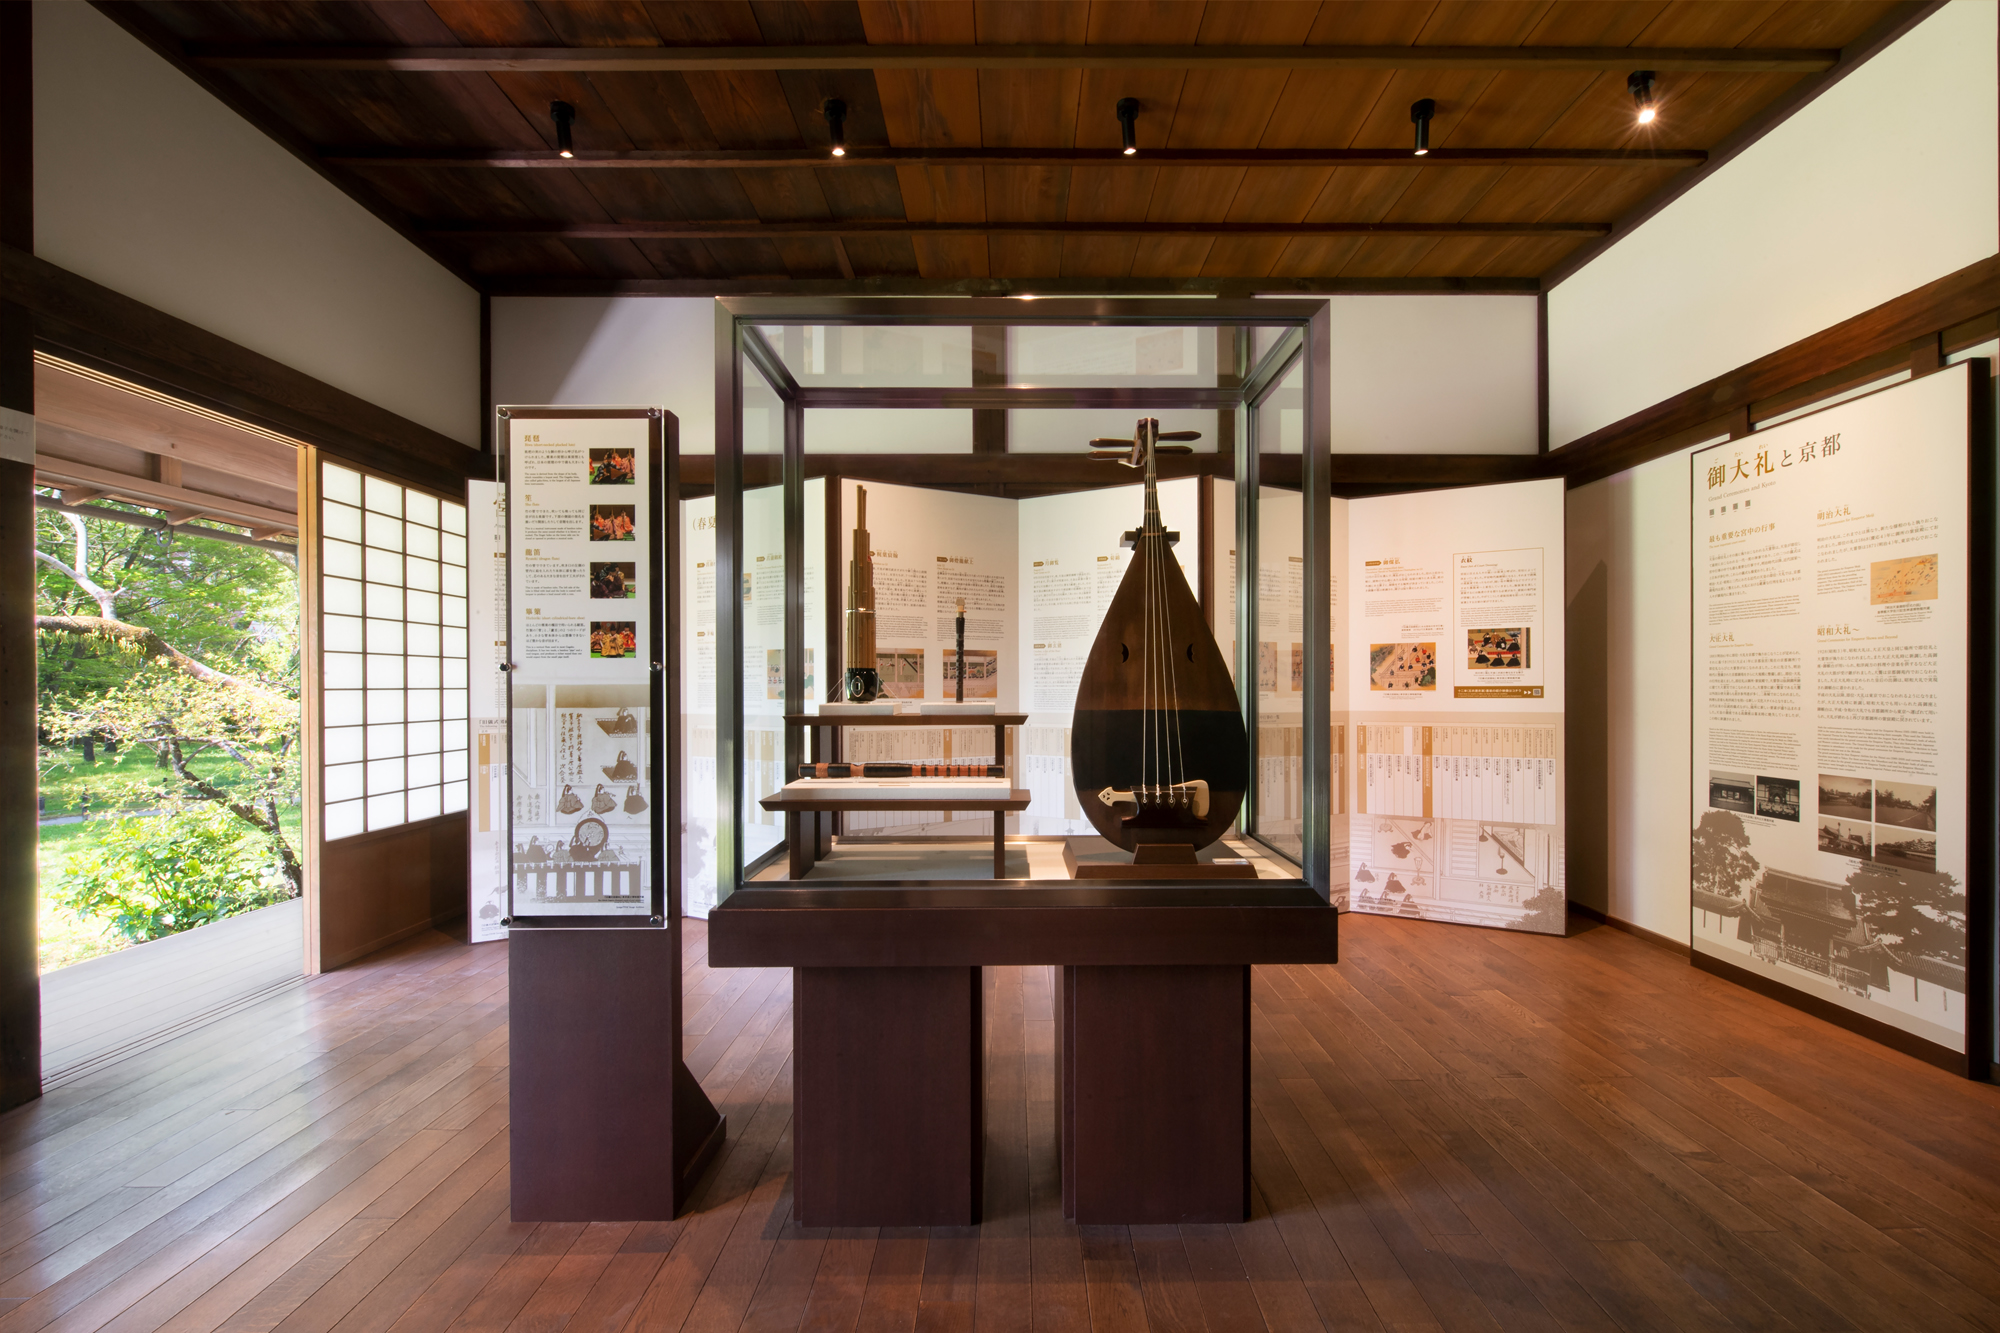 悠久の歴史と現在の魅力を伝える京都御苑の情報発信拠点